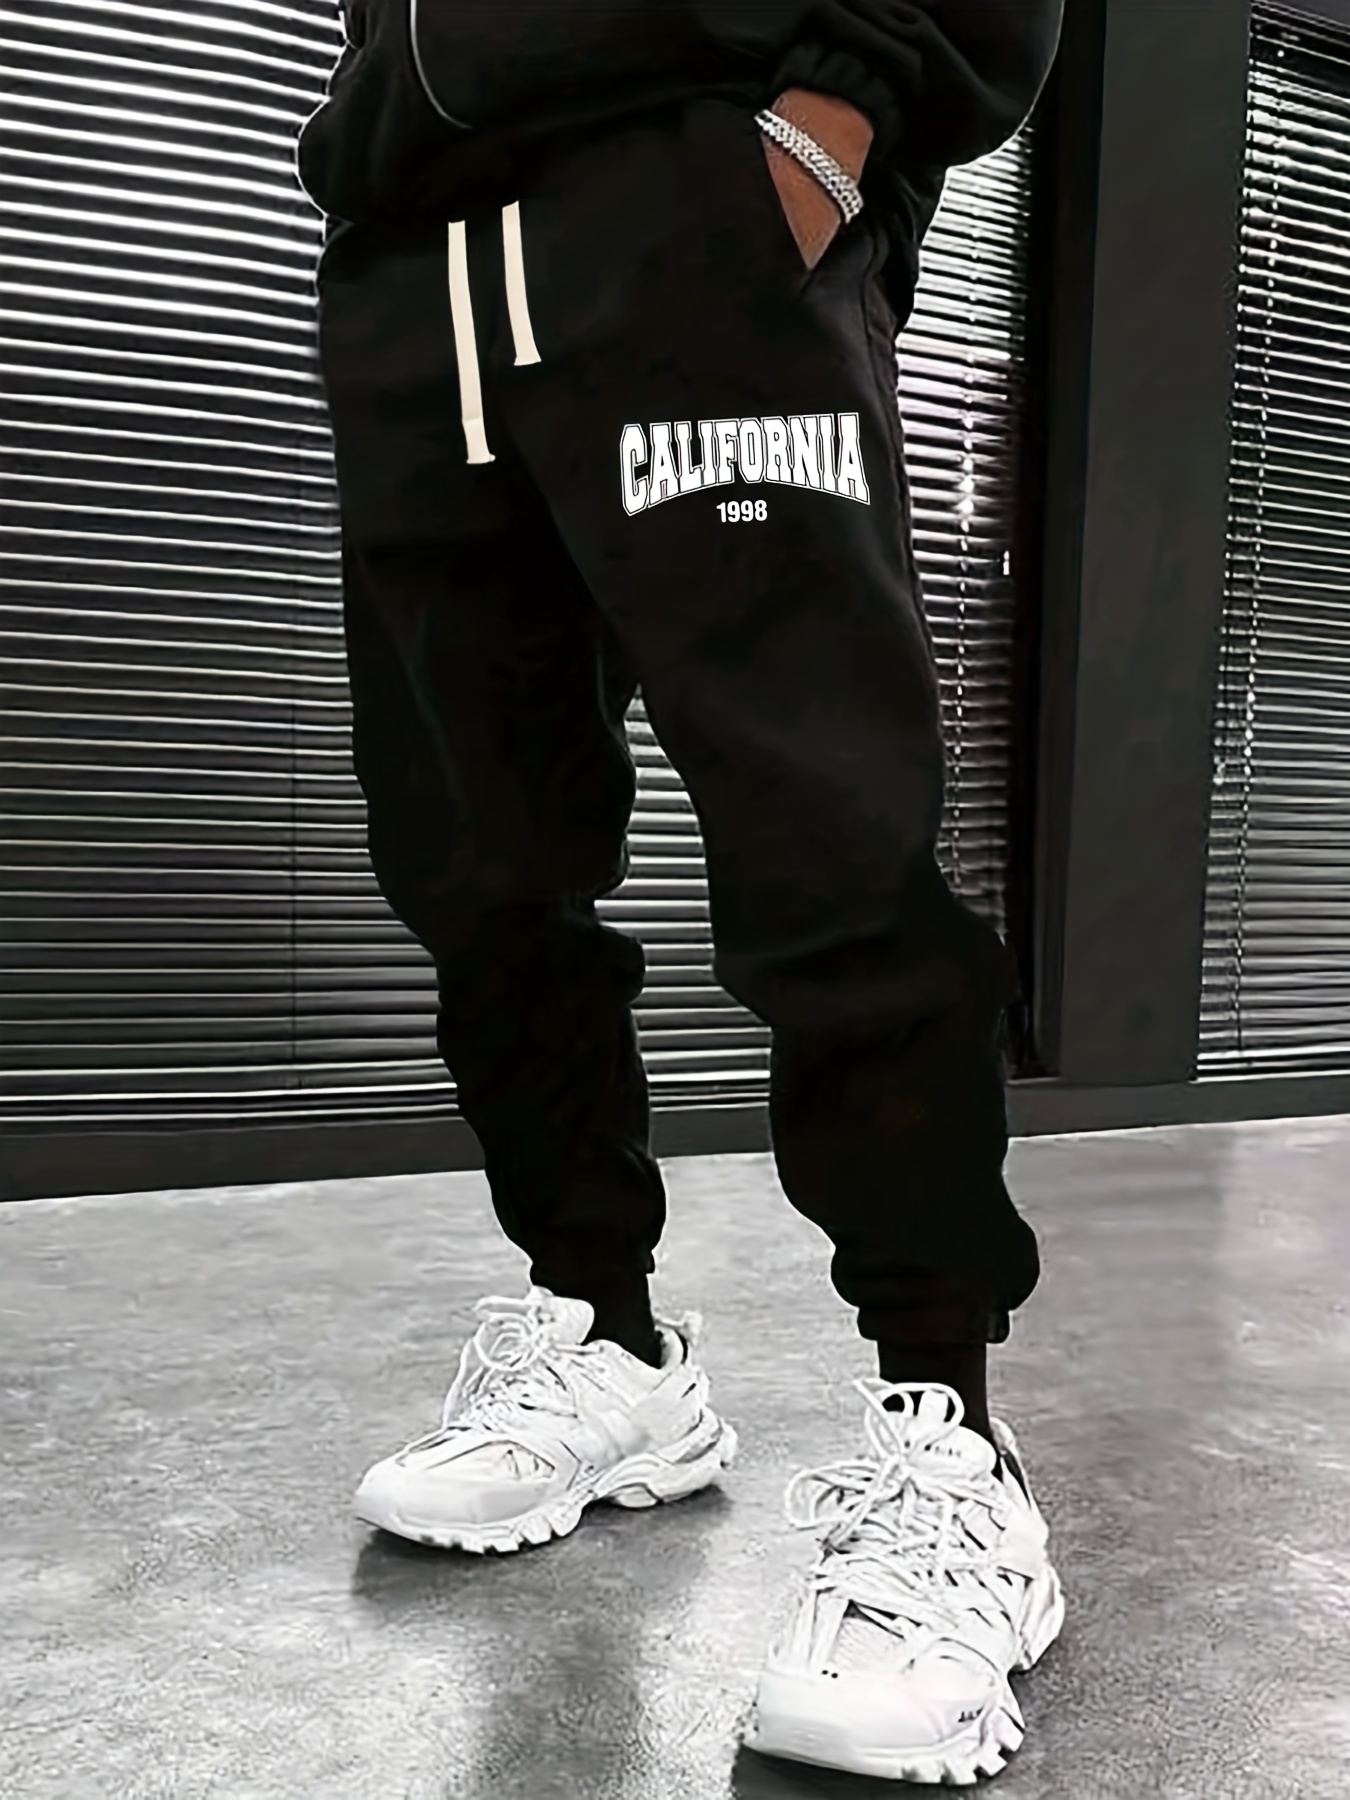 California Crazee Wear Sweatpants & Joggers for Men - Poshmark